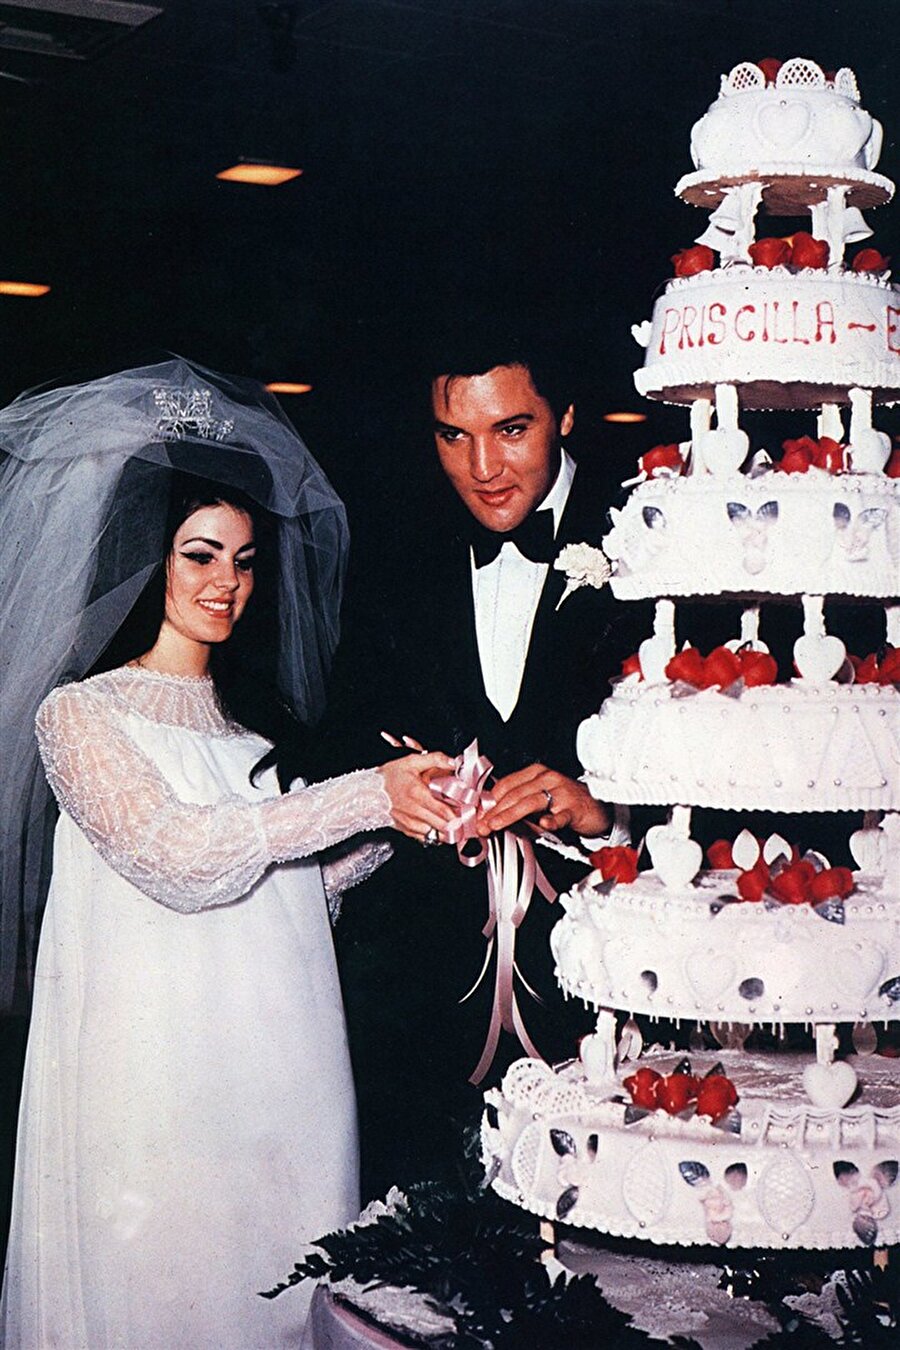  Priscilla Beaulieu

                                    
                                    1967'de Popun Kralı Elvis'le evlenen Priscilla Beaulieu, kendi tasarımı olan uzun elbiseyi giymişti.
                                
                                